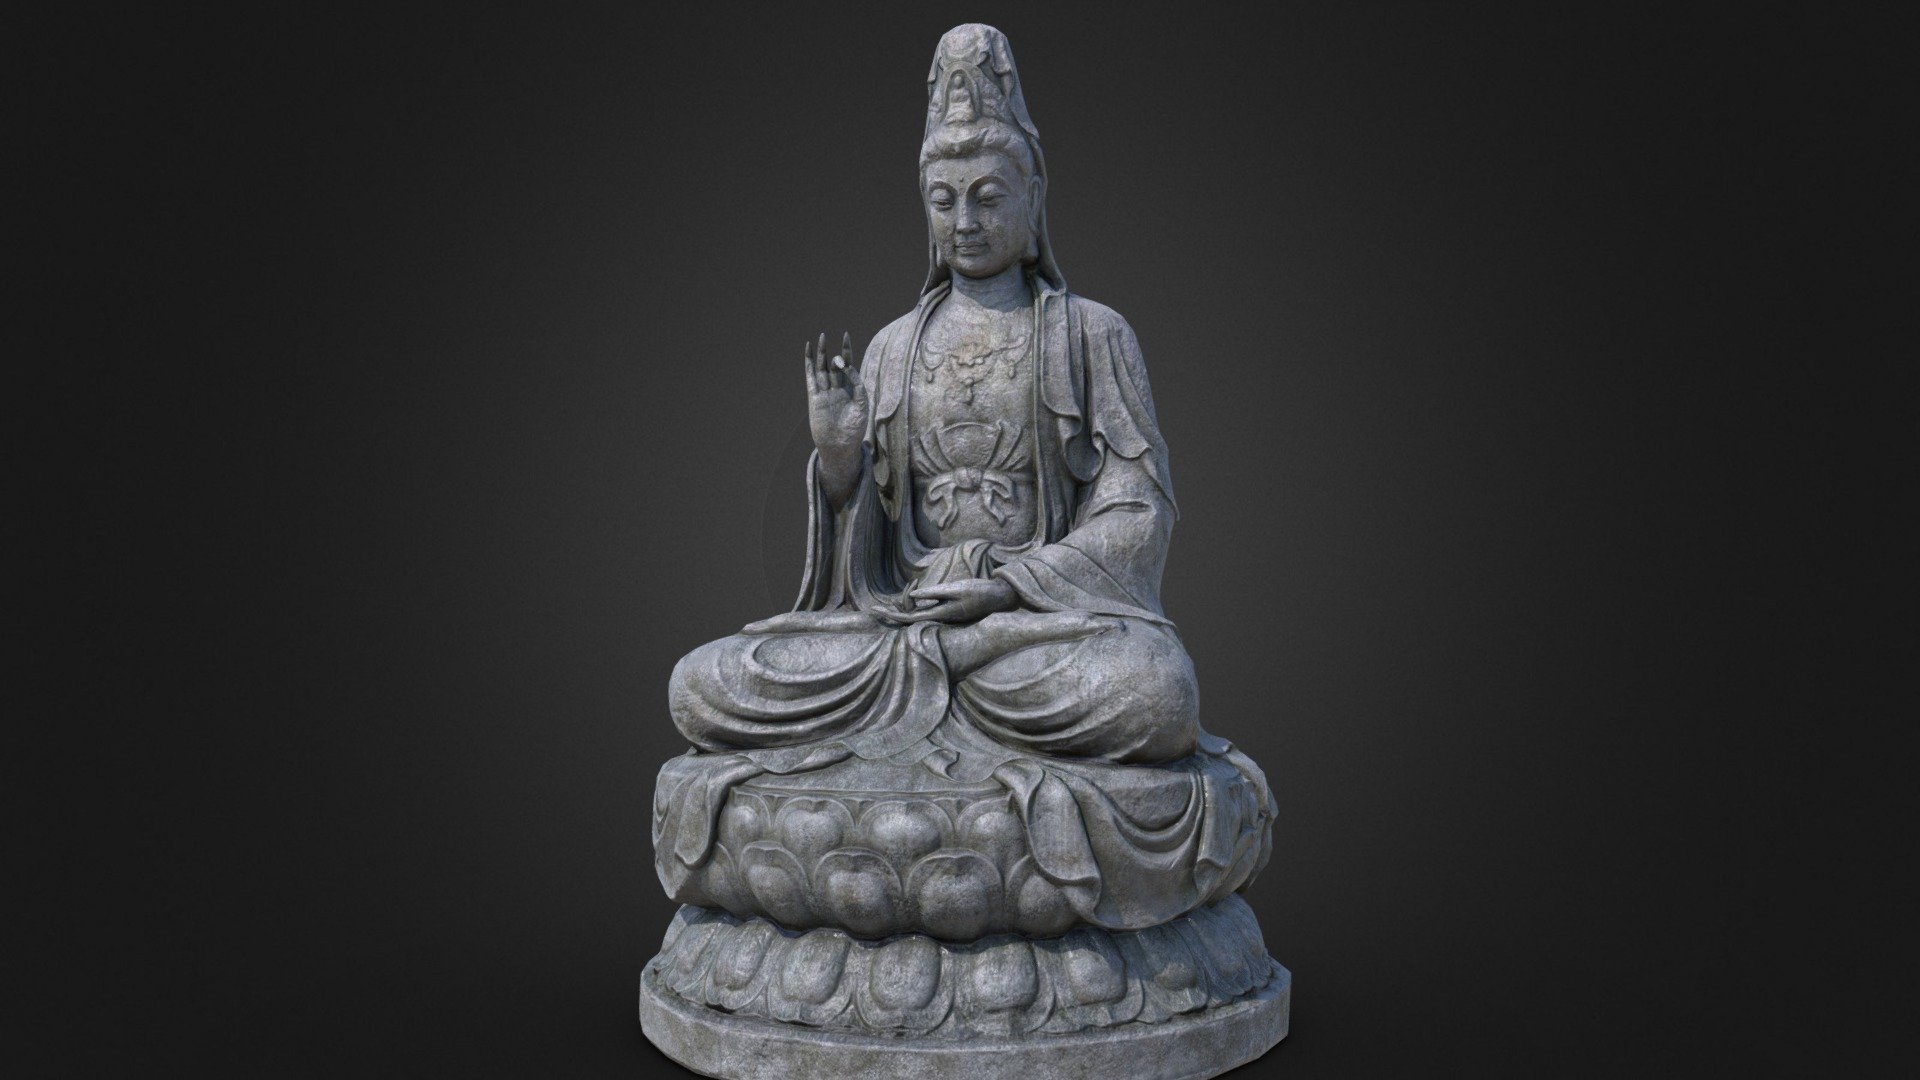 Stone Buddha statue - Stone Buddha statue - 3D model by zeting 3d model